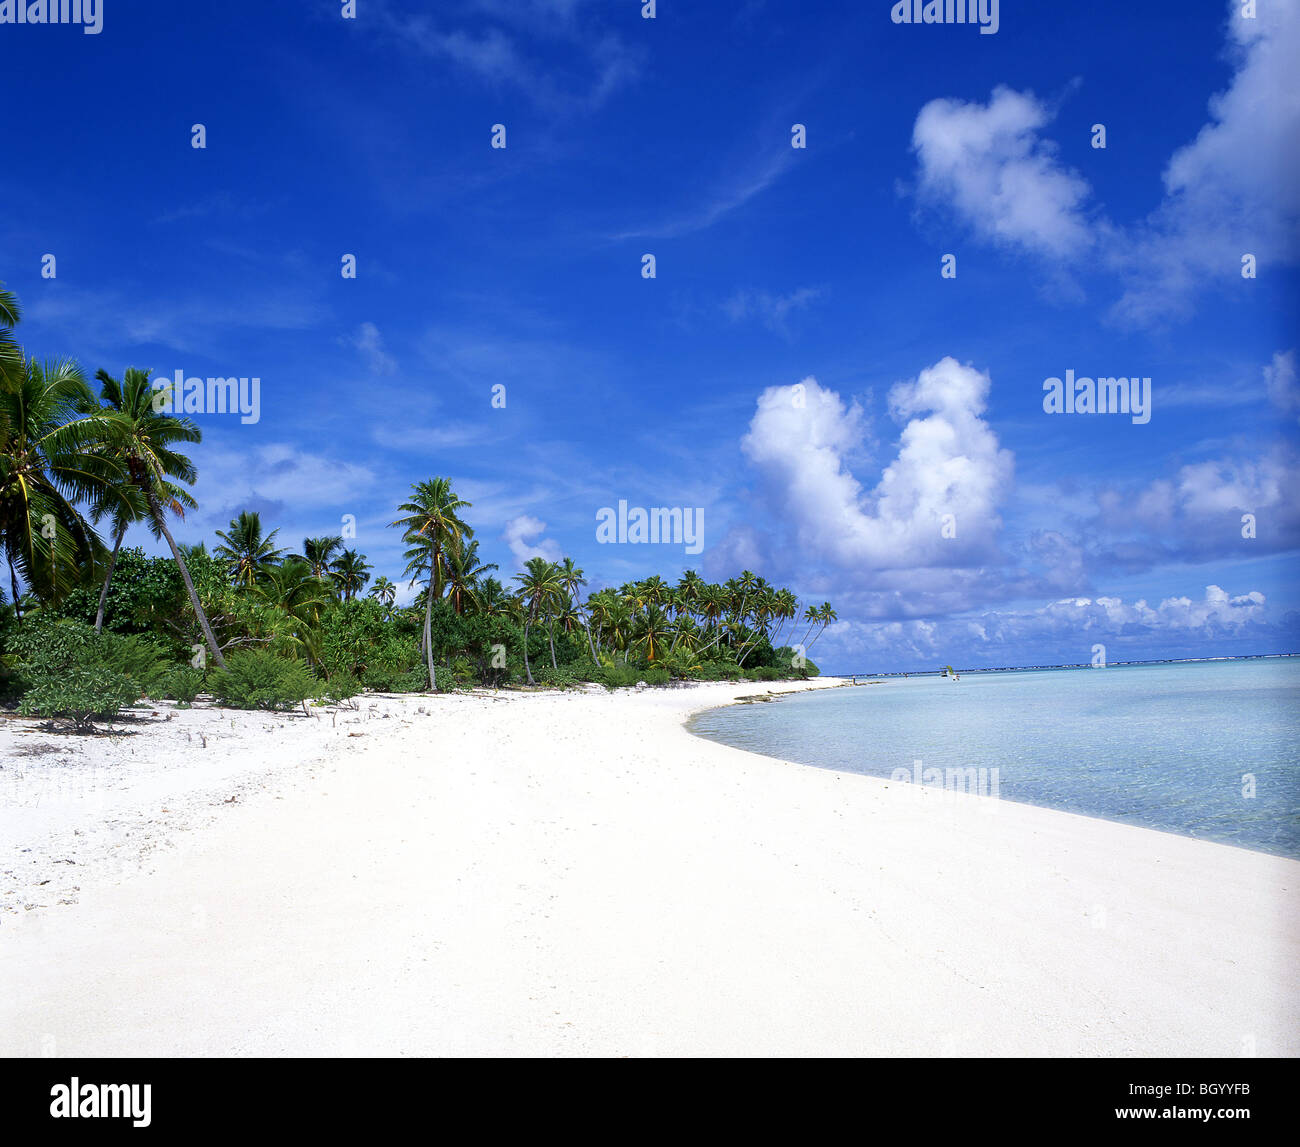 Spiaggia tropicale, atollo di Aitutaki, Isole Cook Foto Stock